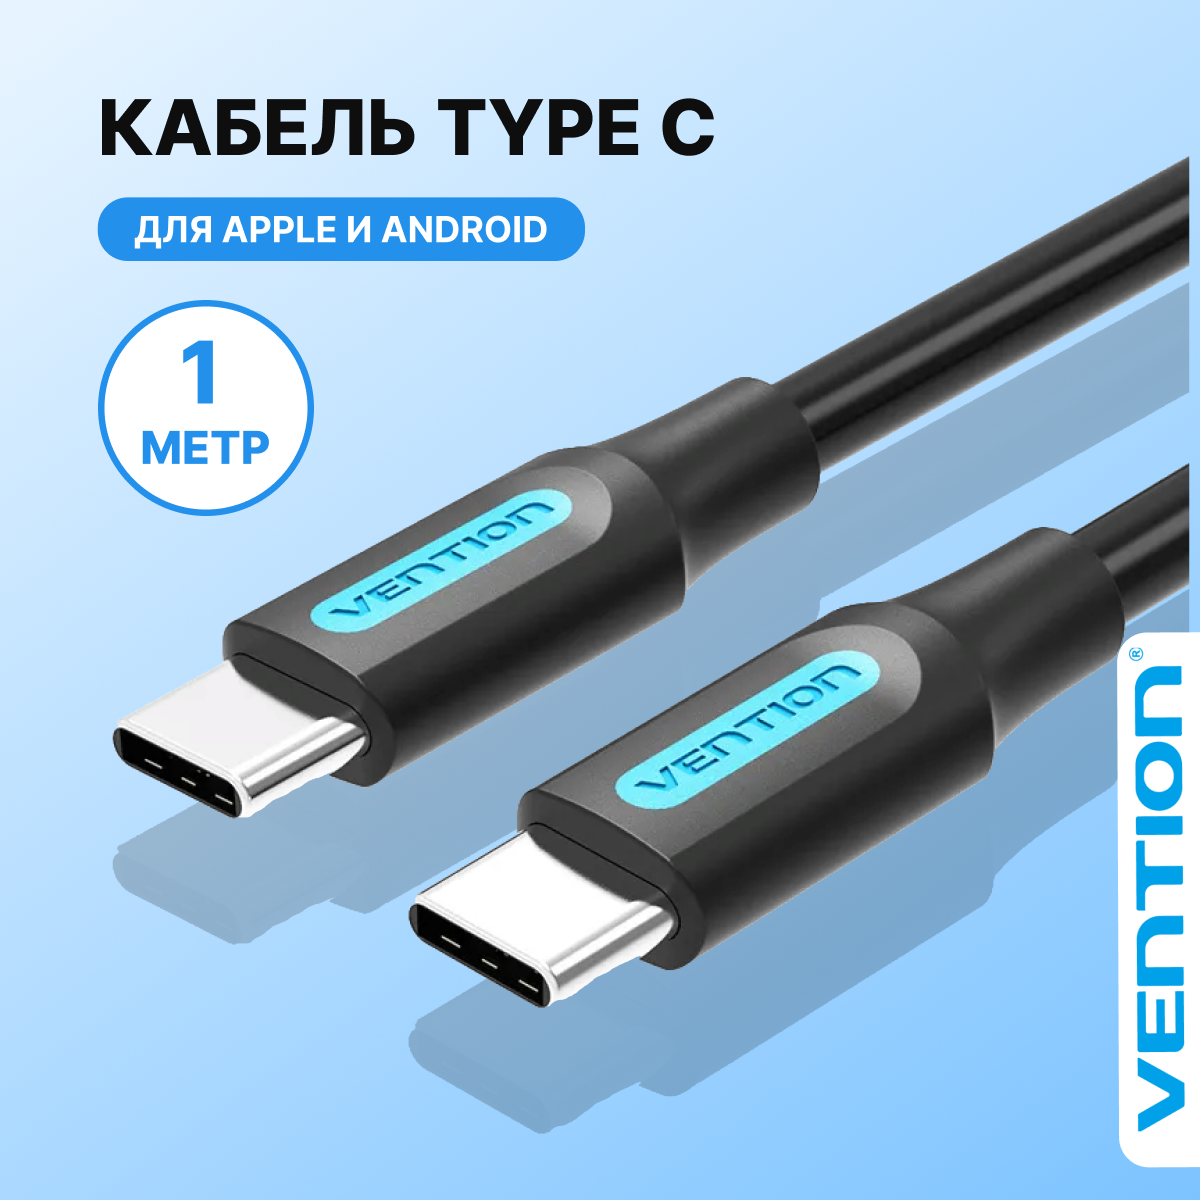 Кабель typec USB 2.0 длина 1 метр Vention провод type c для Samsung, Xiaomi, Honor, QC черный, арт. COSBF